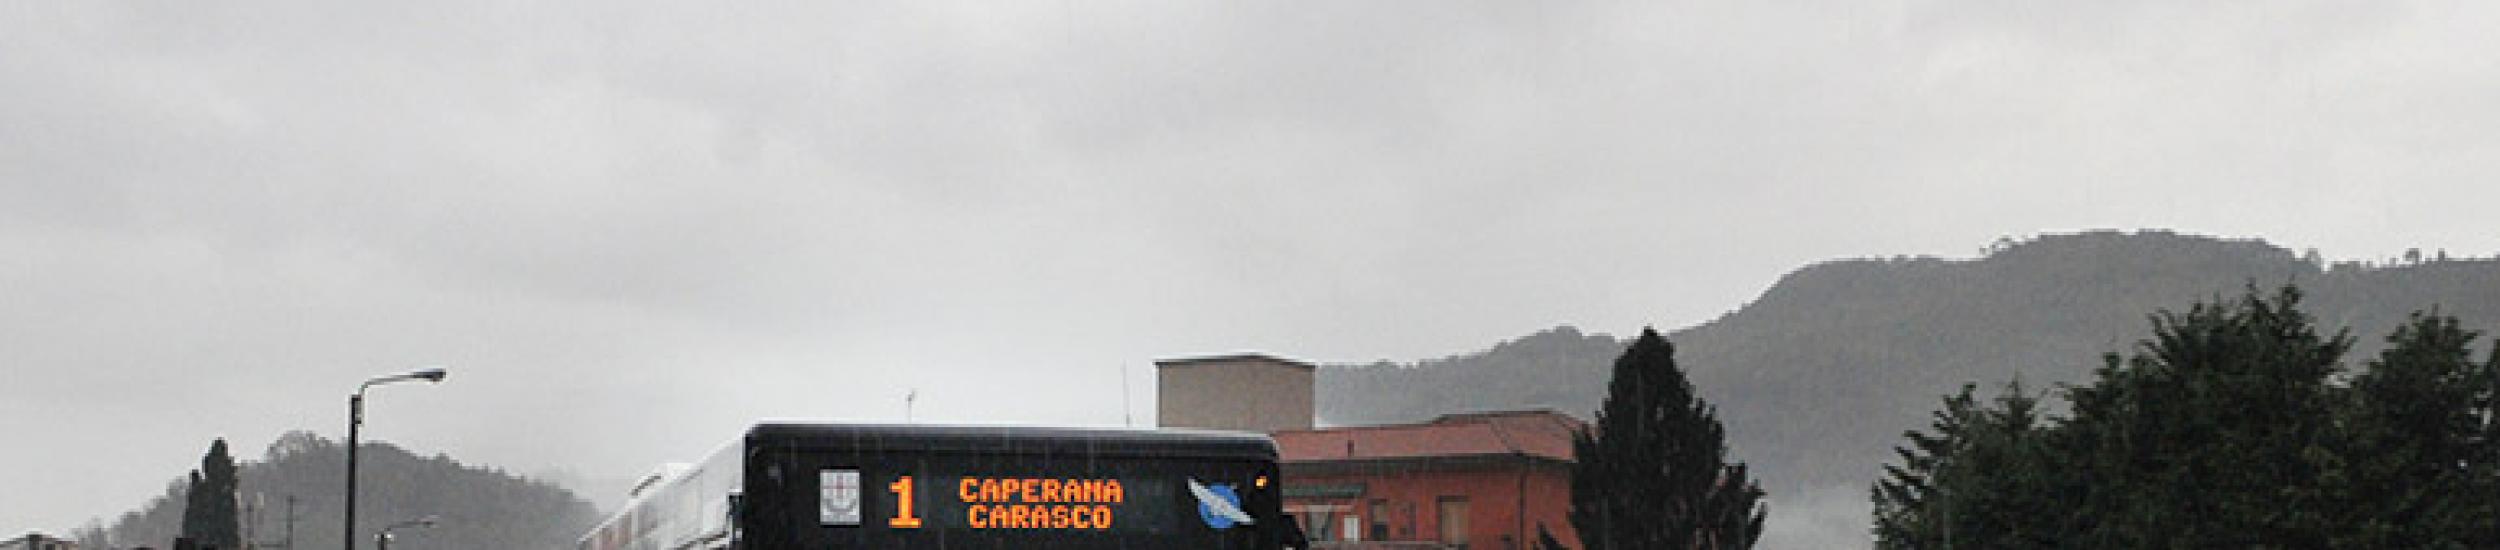 Aria: ponte piovoso ma senza inquinamento nella città metropolitana di genova (news del 2015-05-04 09:53:59)